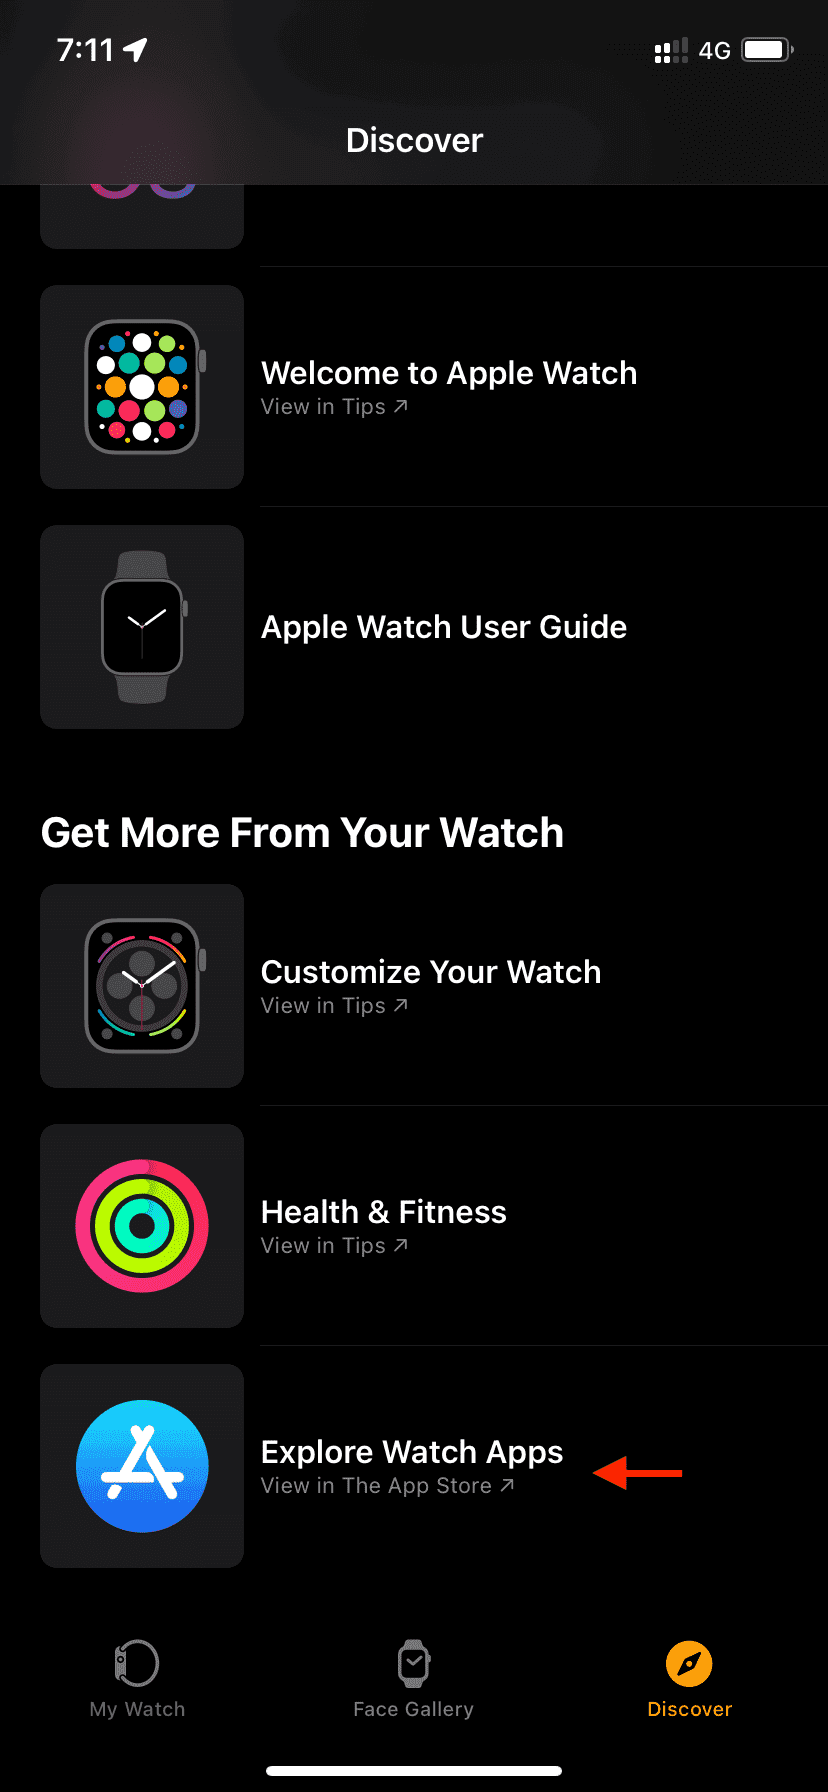 Explore Watch Apps